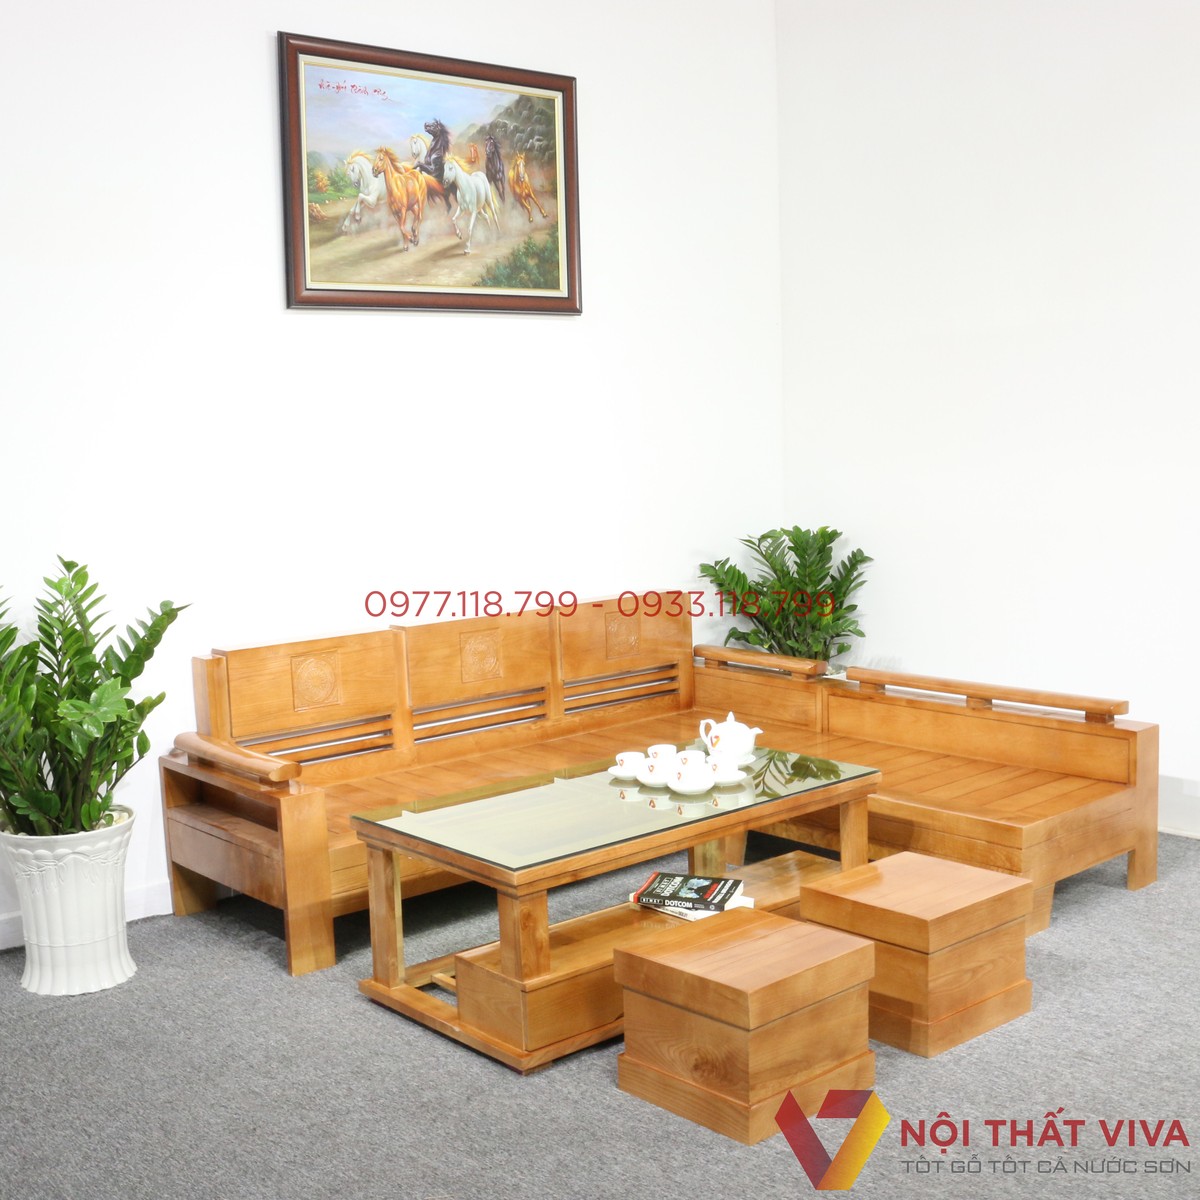 Mẫu ghế sofa gỗ đẹp là một lựa chọn hoàn hảo cho những ai yêu thích sự tối giản. Với chất liệu gỗ chất lượng cao và thiết kế tinh tế, chiếc ghế sofa này sẽ mang lại cho bạn không gian sống đẹp và tinh tế hơn.